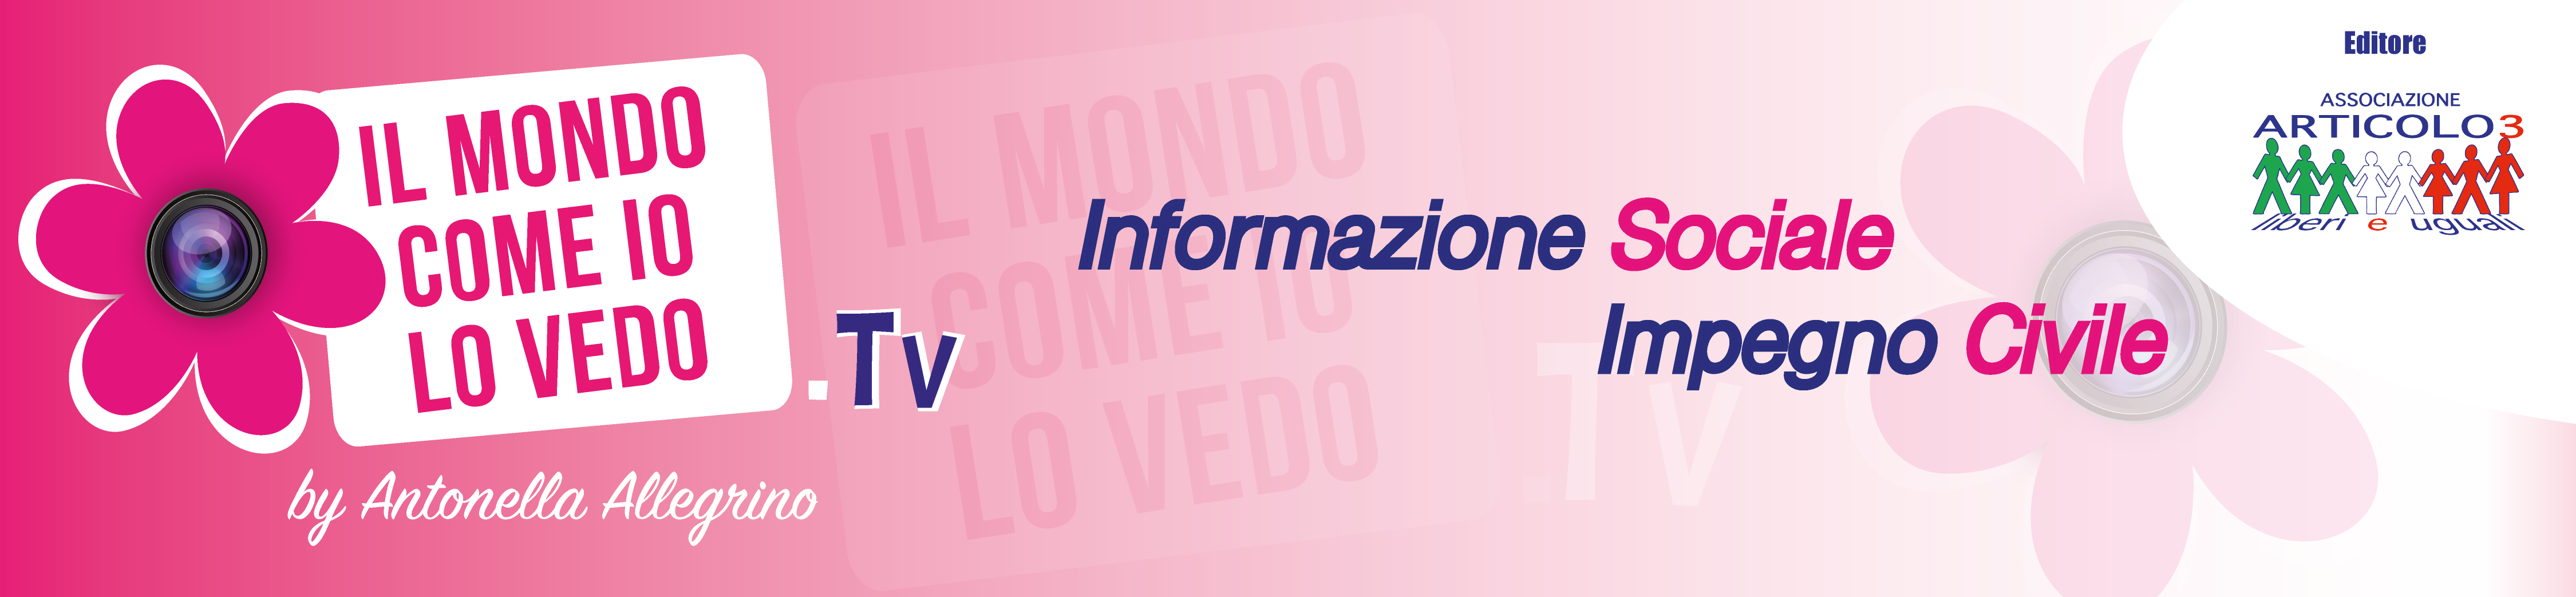 IlMondo.tv